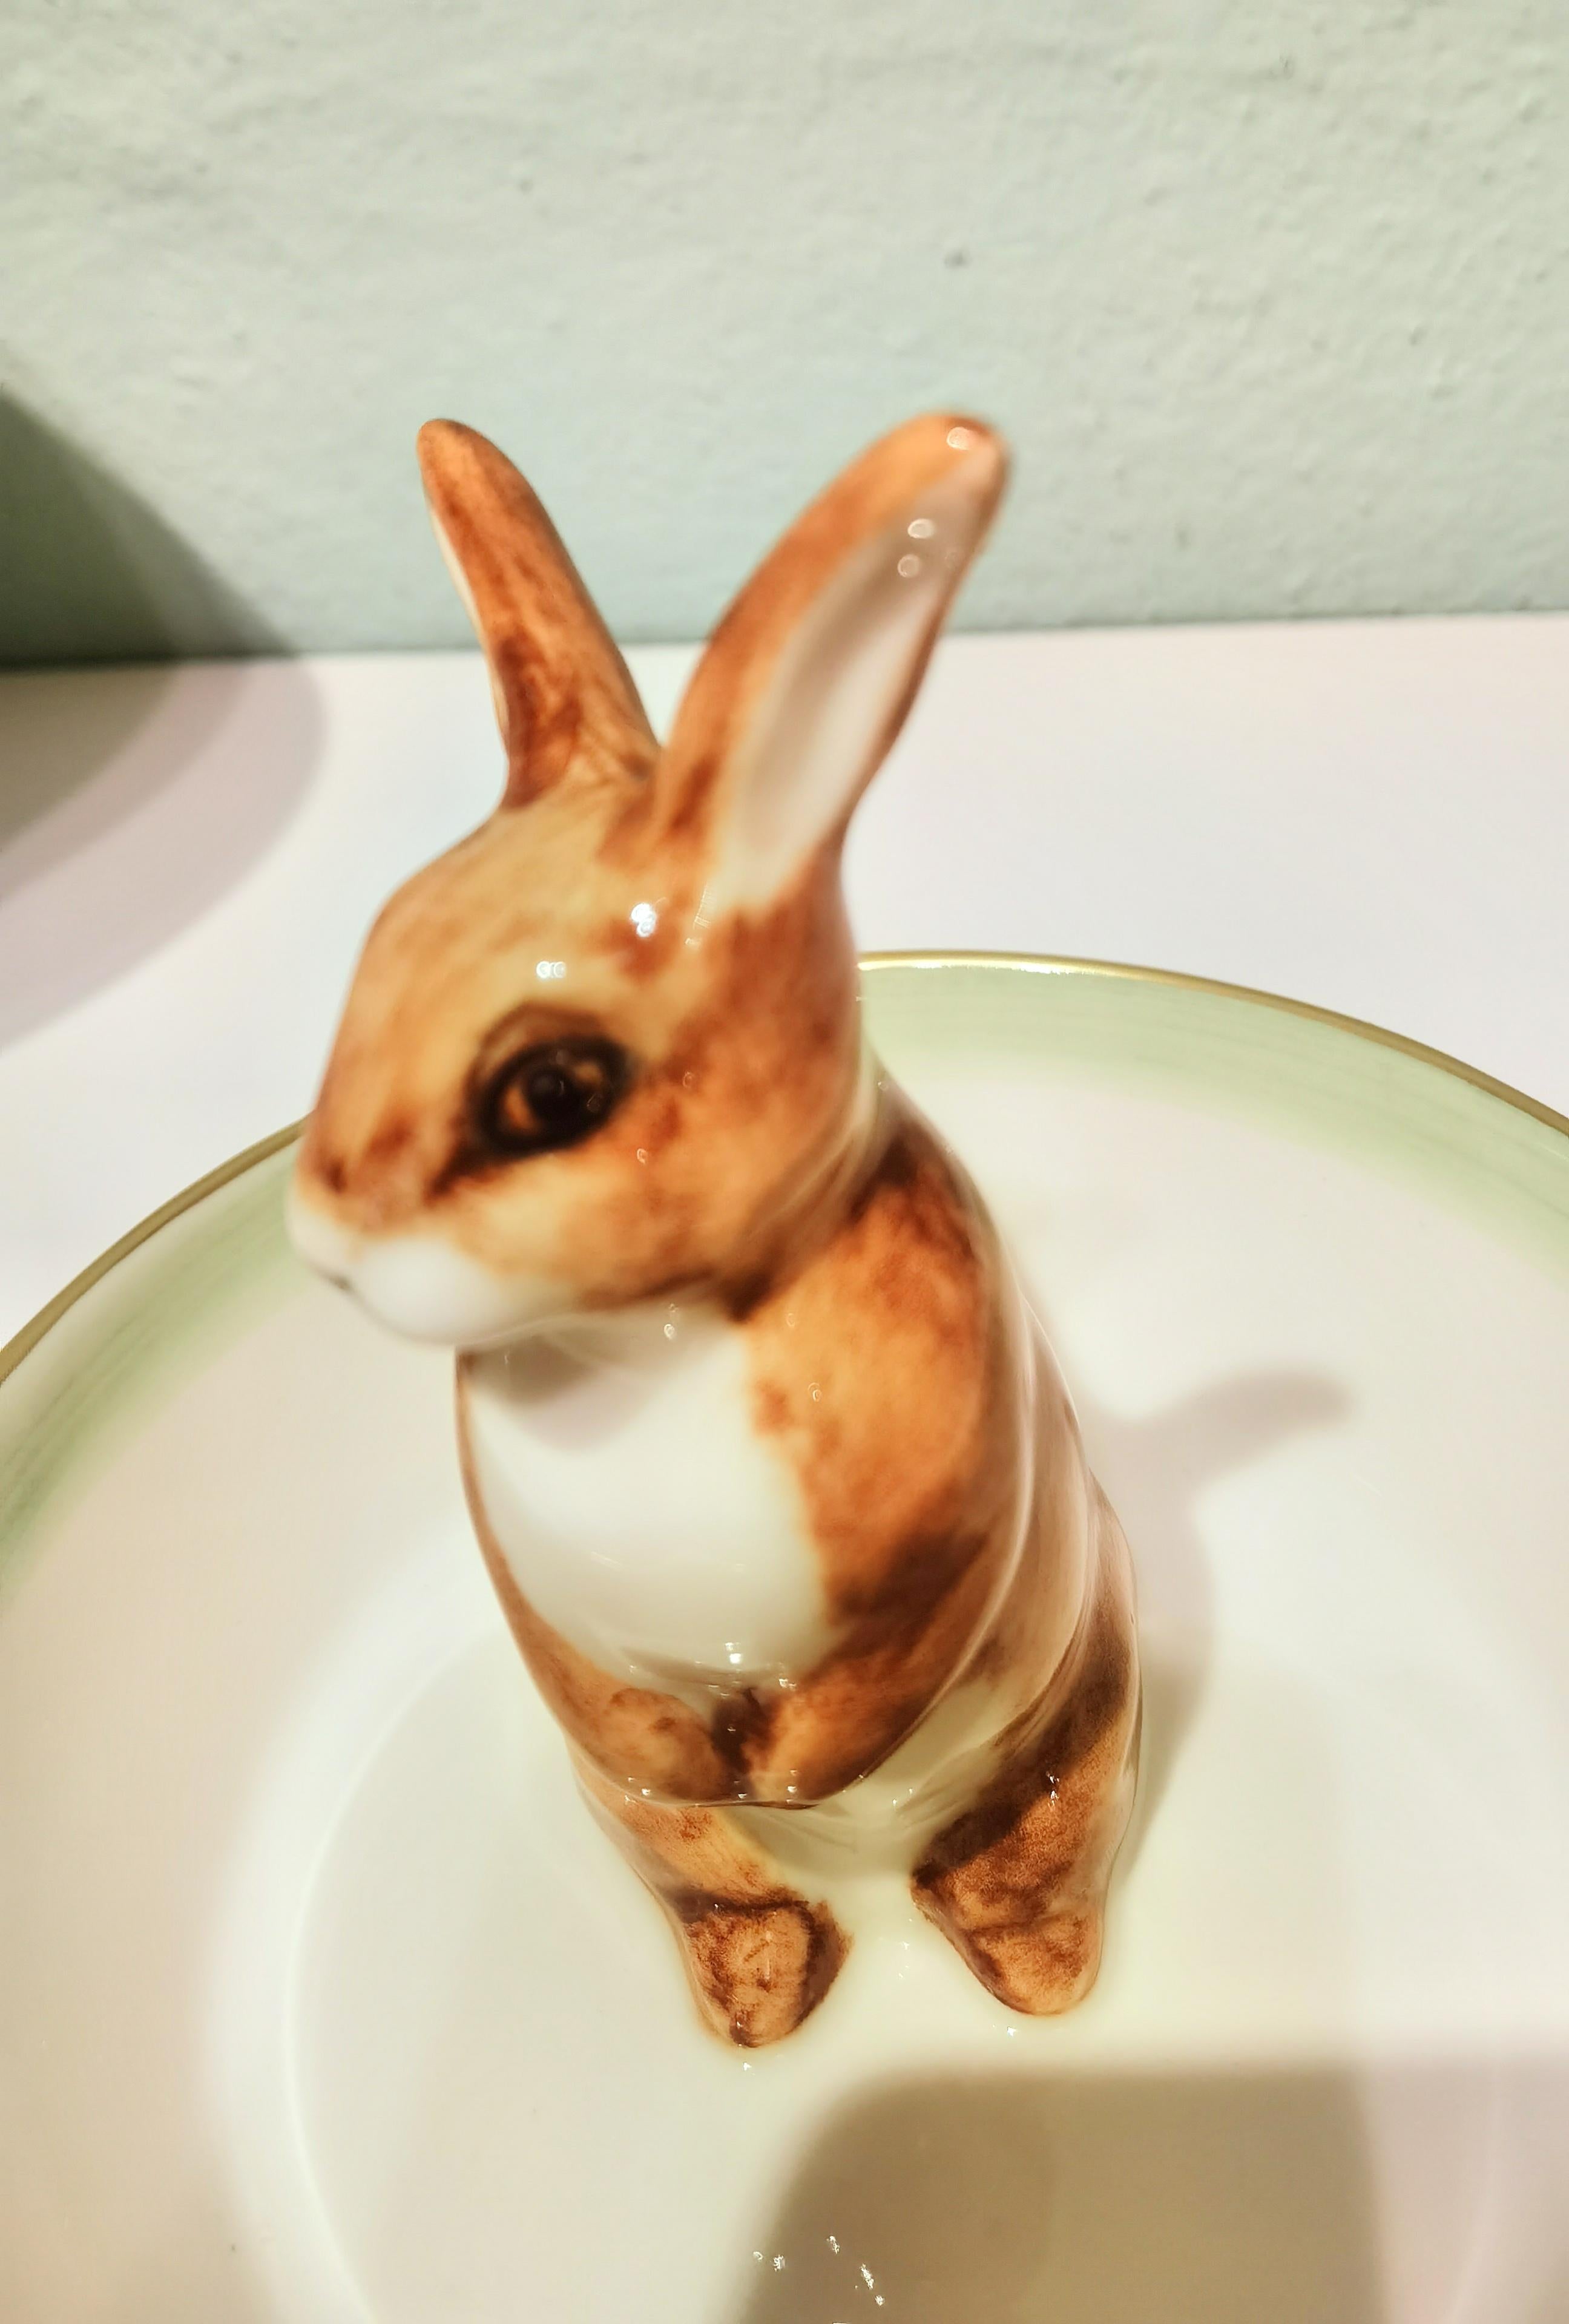 Diese komplett handgefertigte Porzellan-Backform ist freihändig mit einem braun-weiß gemalten Kaninchen in der Mitte der Form bemalt. Von Hand umrandet mit einer grünen und feinen 24-Karat-Goldlinie. Handgefertigt in Bayern / Deutschland.
Über